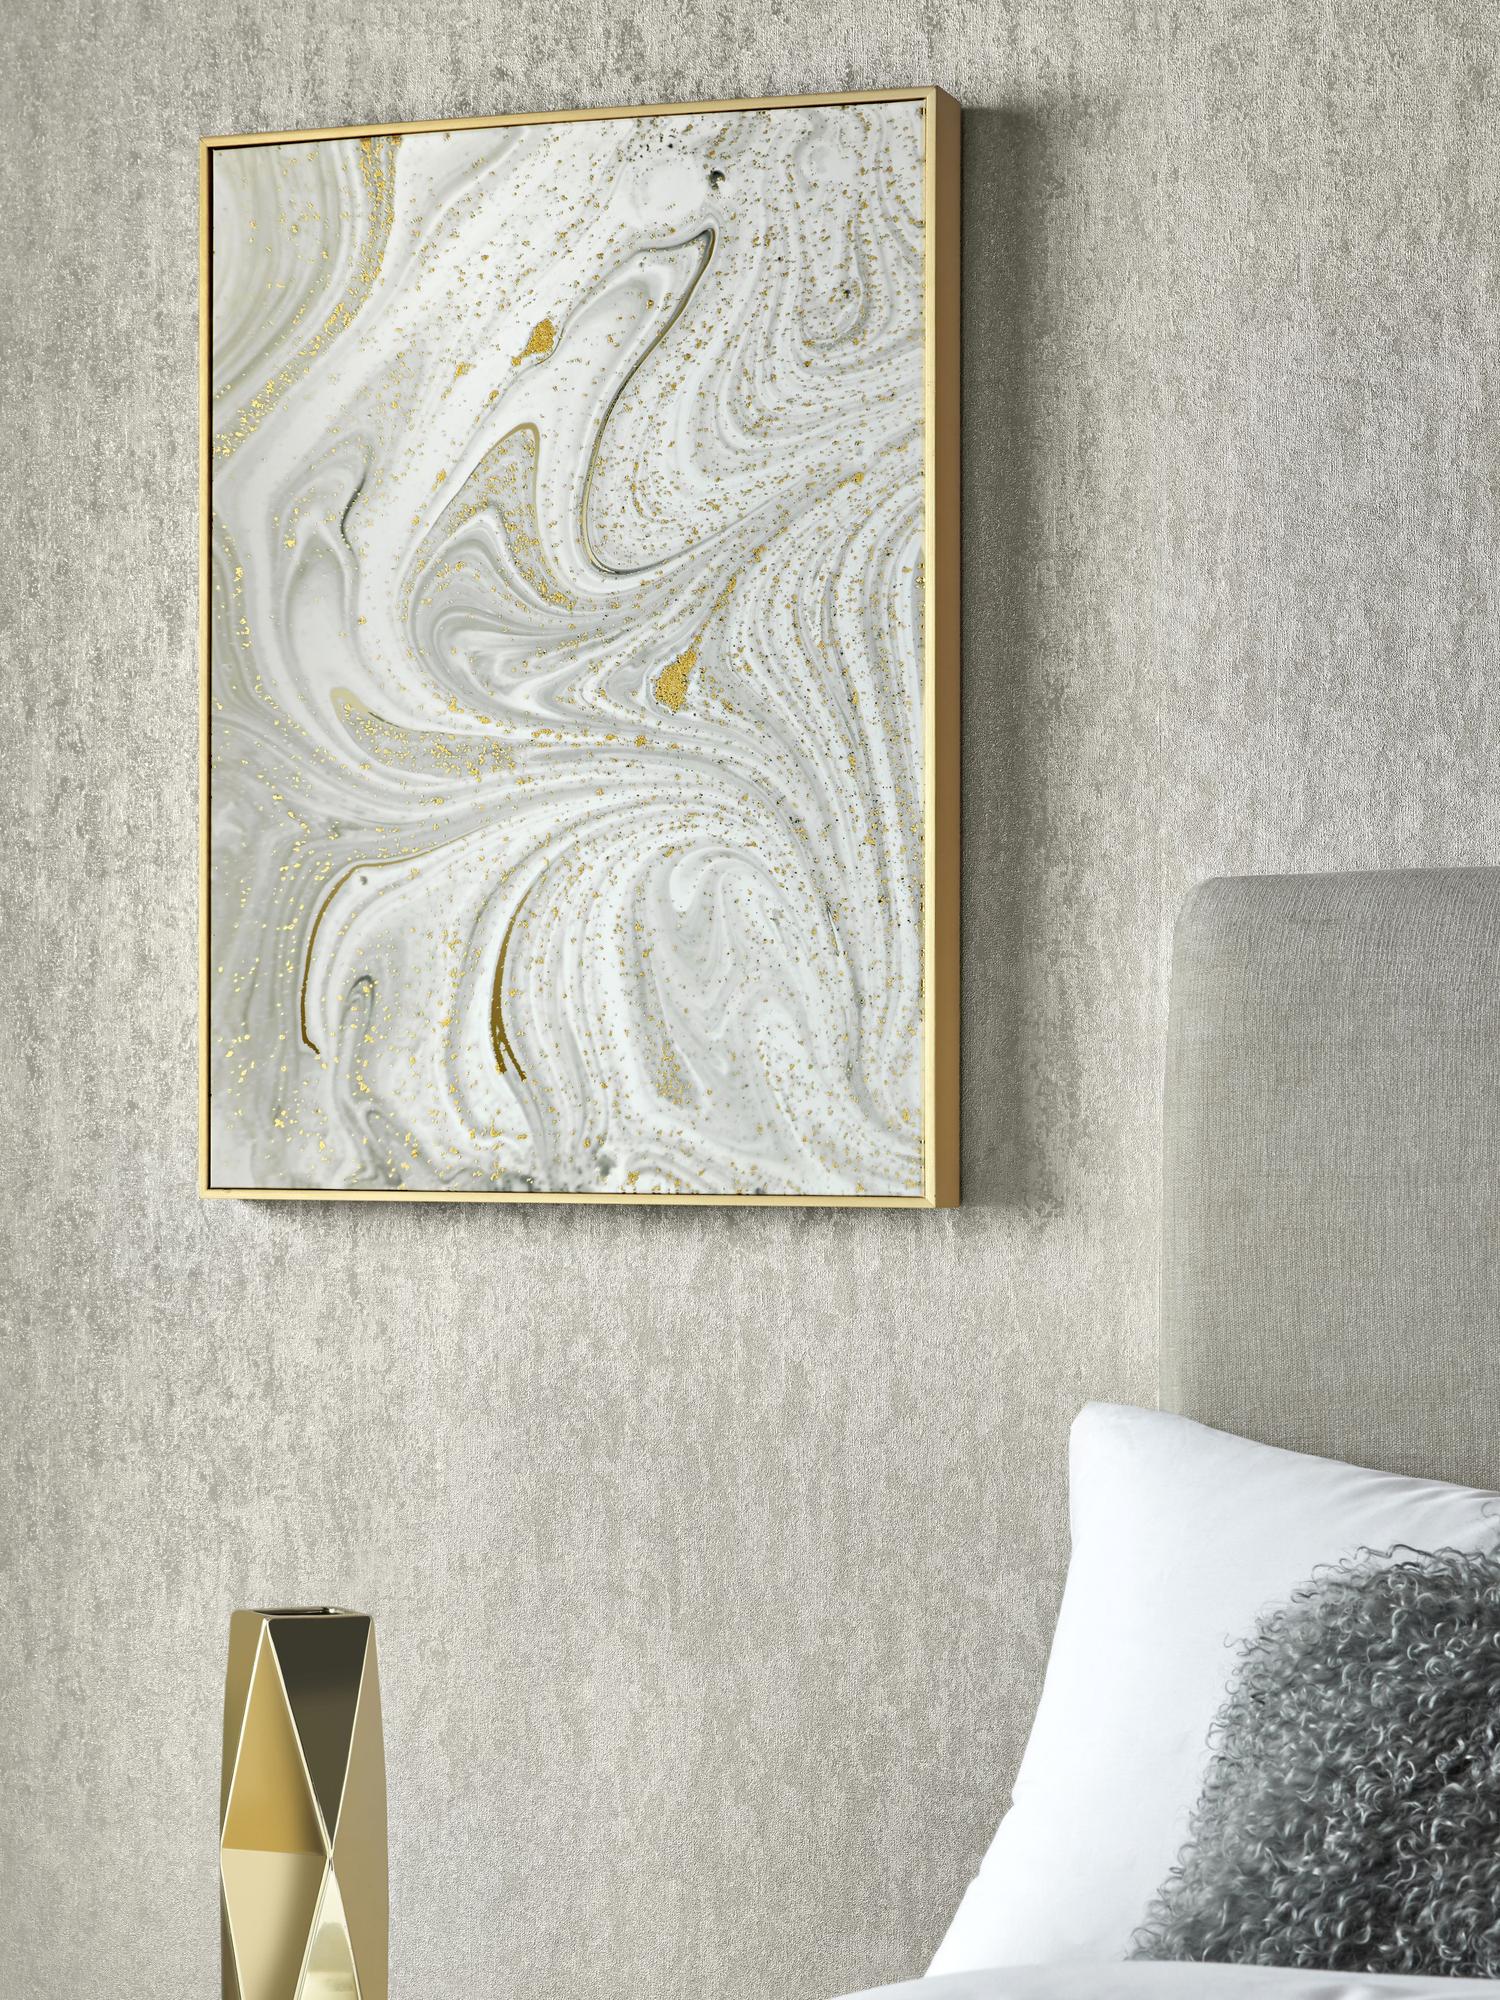 Gerahmter Leinwanddruck Marble, Bild: Digitaldruck auf Leinen, Rahmen: Metall, beschichtet, Weiß, Grau, Goldfarben, 50 x 70 cm